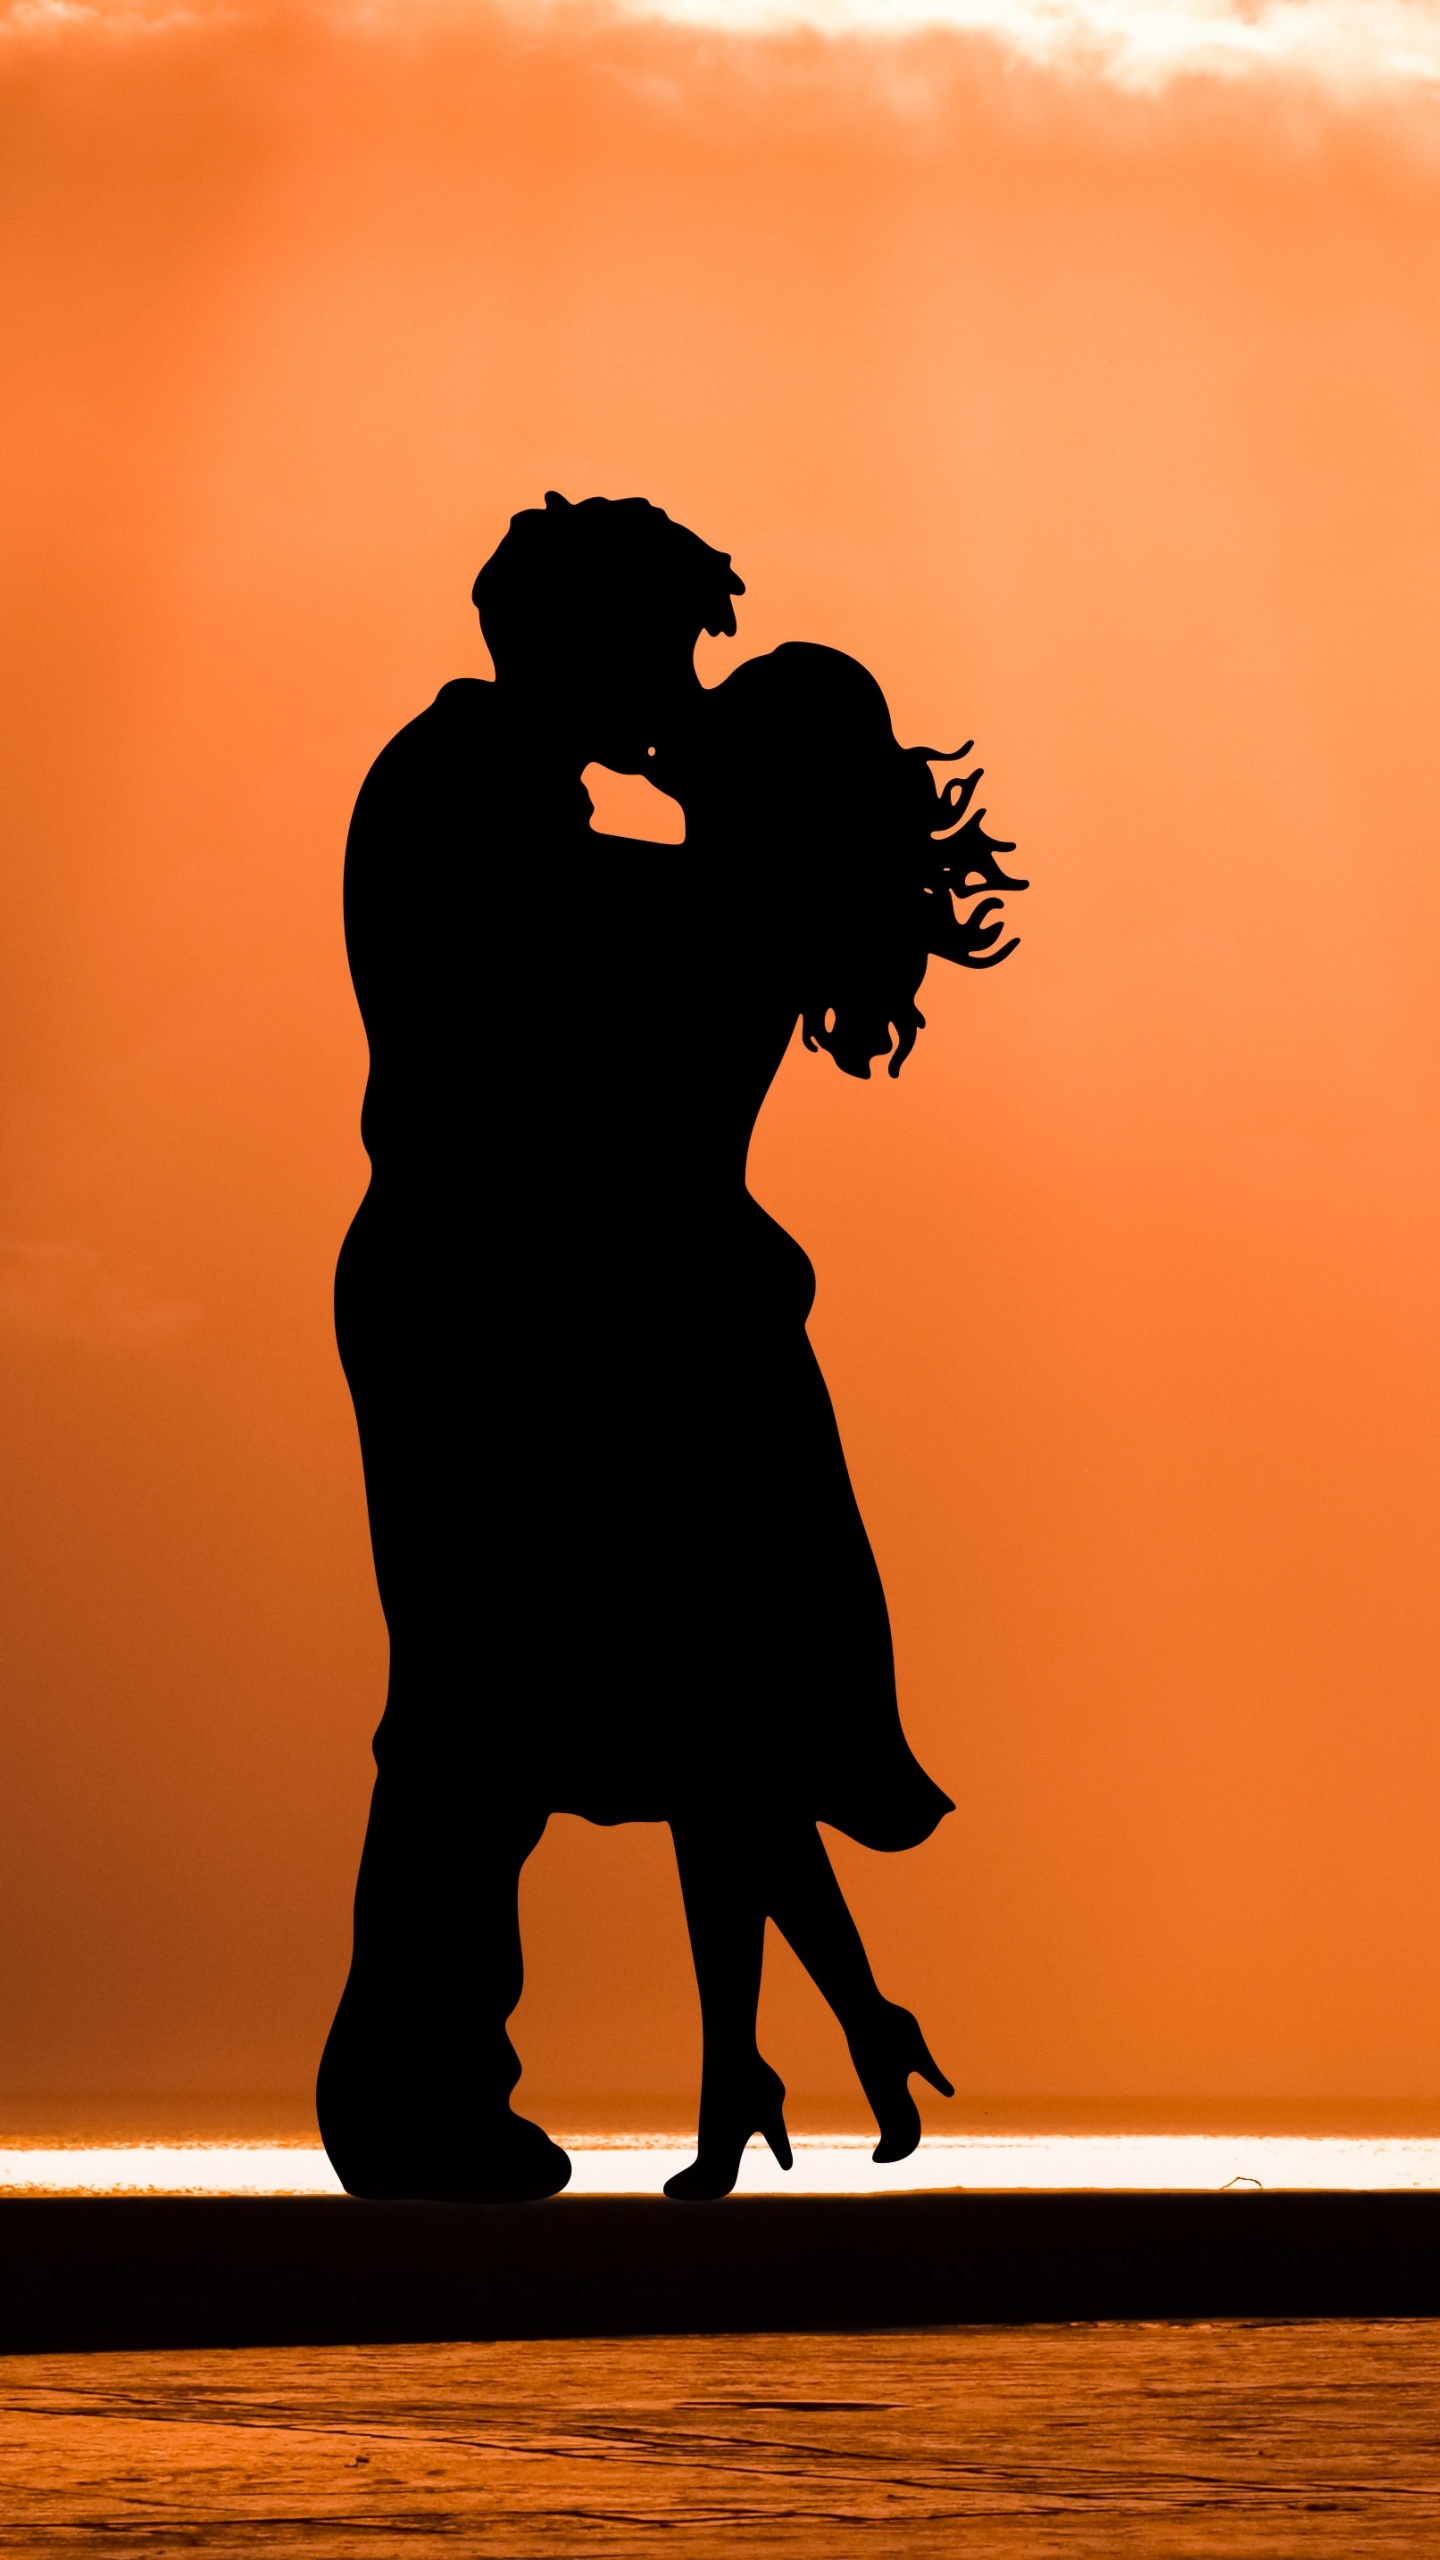 Romantik, Kuss, Silhouette, Menschen in Der Natur, Abend. Wallpaper in 1440x2560 Resolution